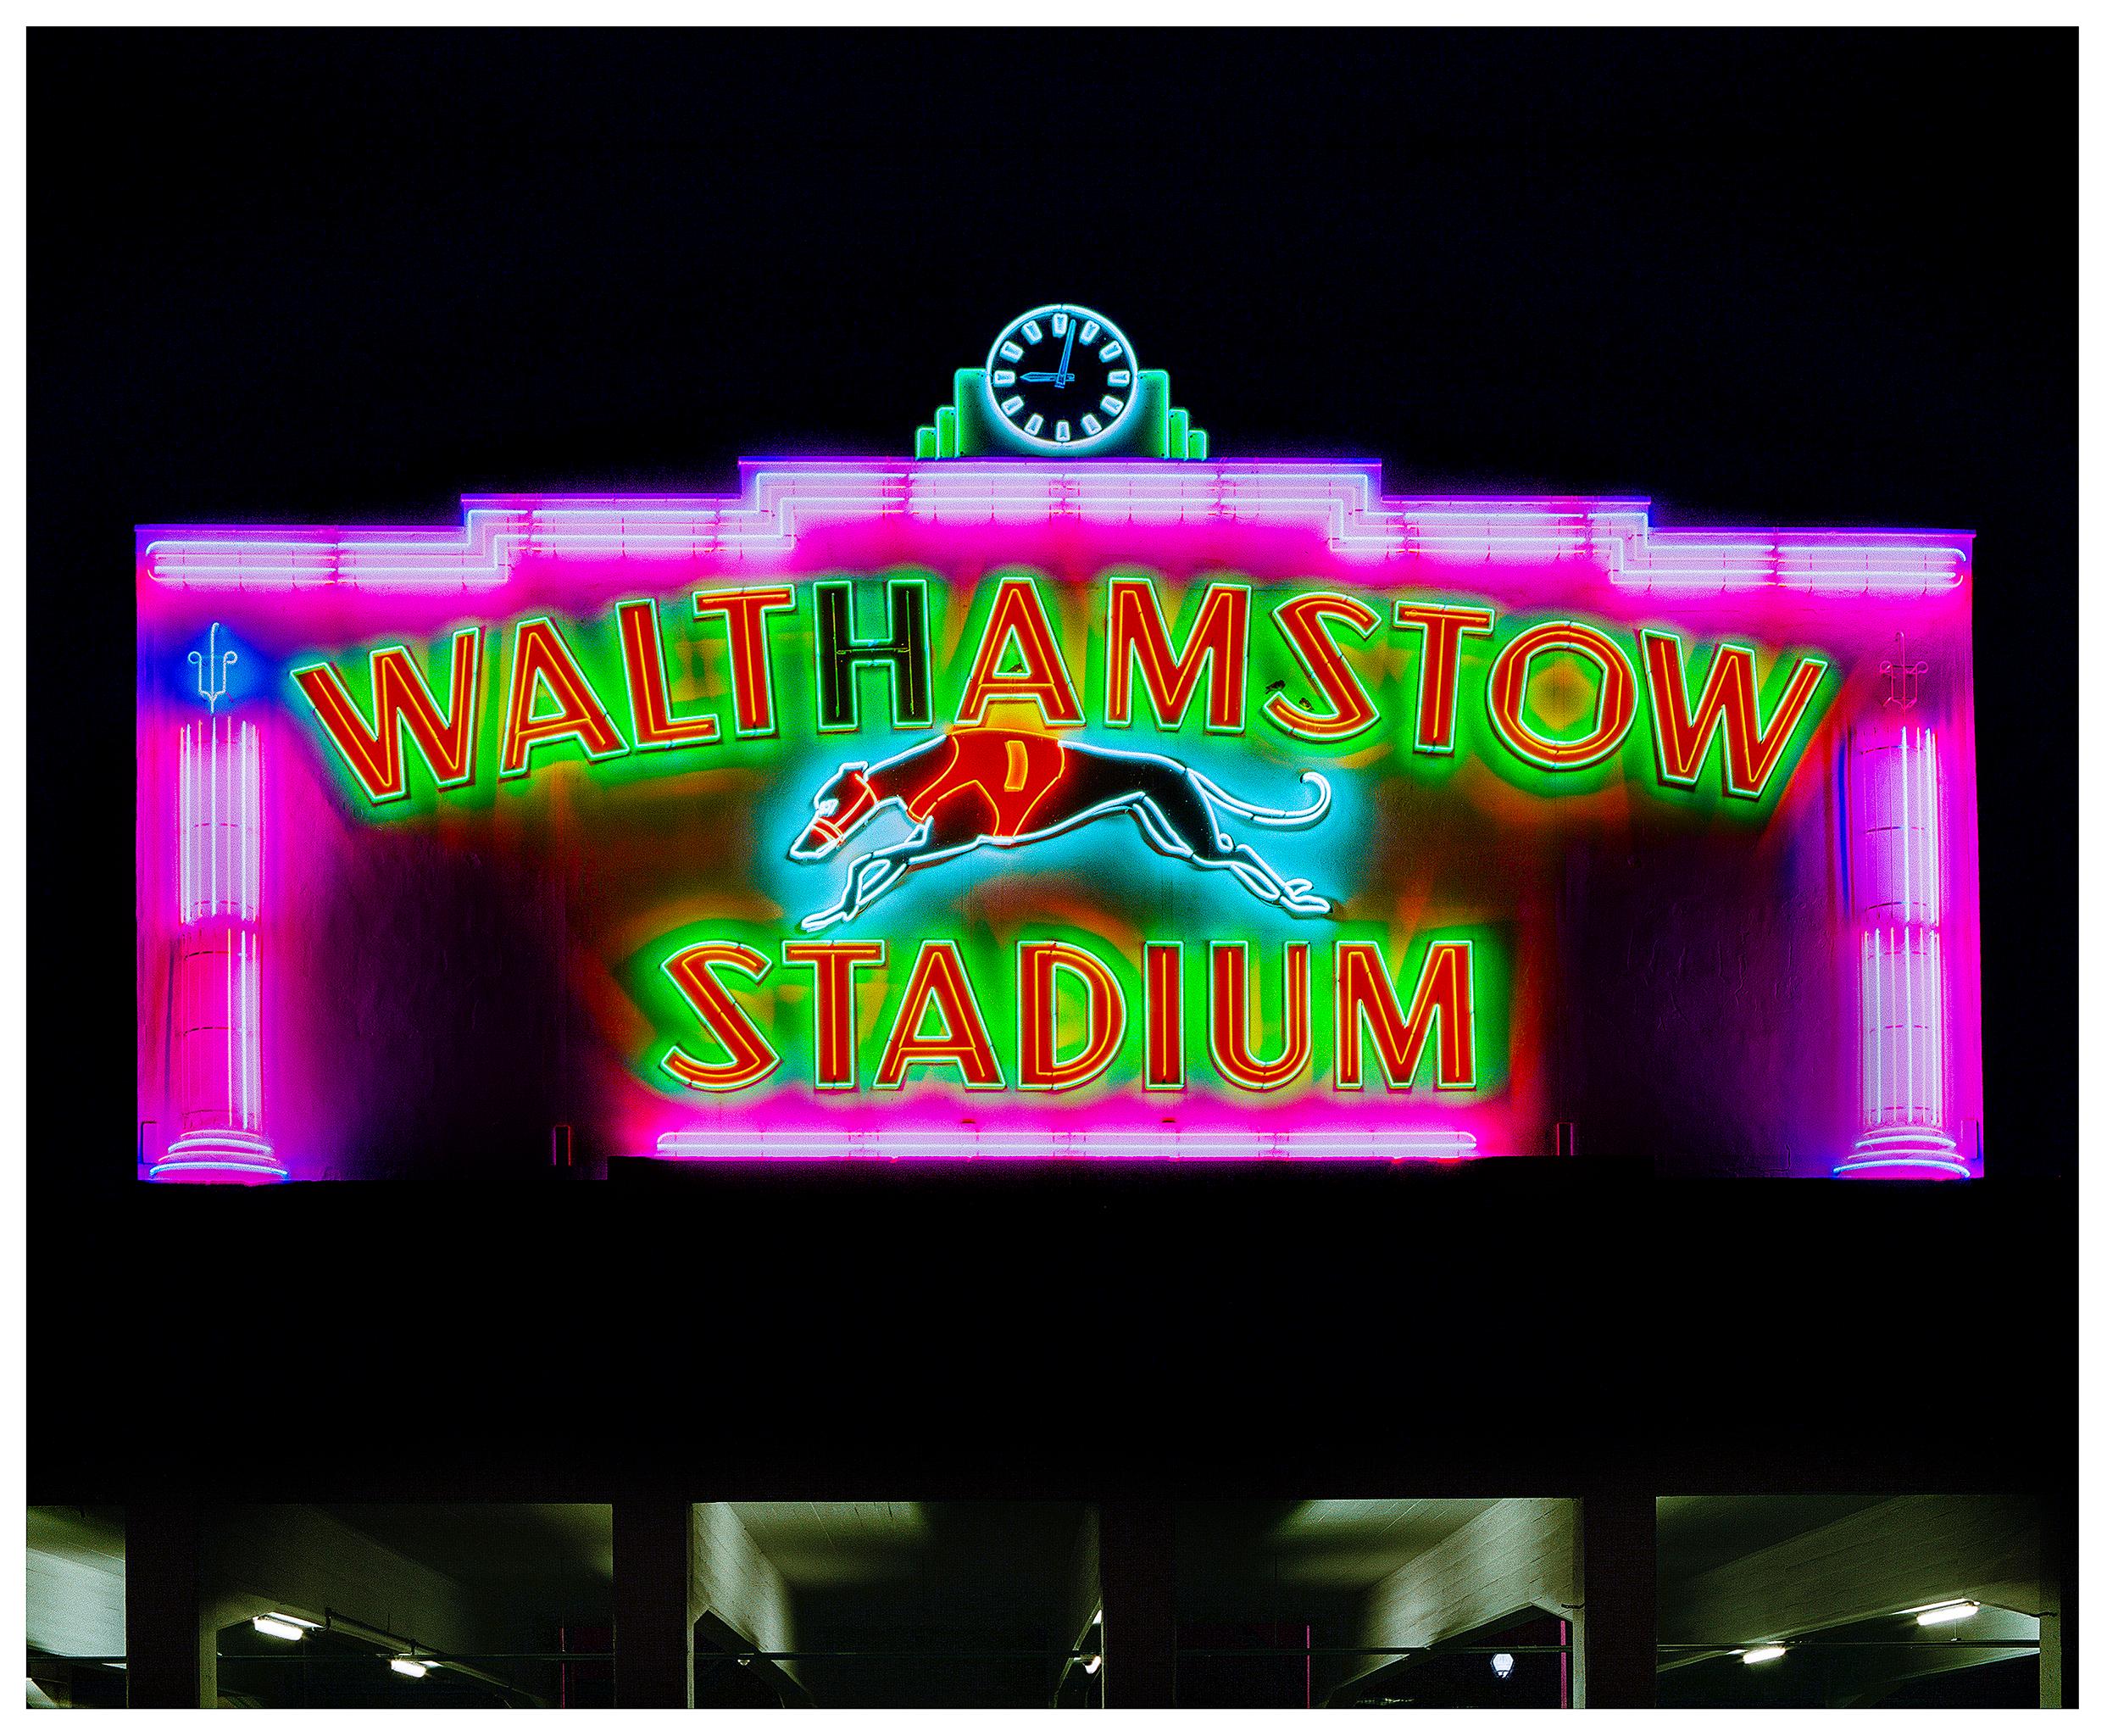 Le stade de Walthamstow la nuit, Londres - Photographie en couleur d'un panneau de signalisation britannique